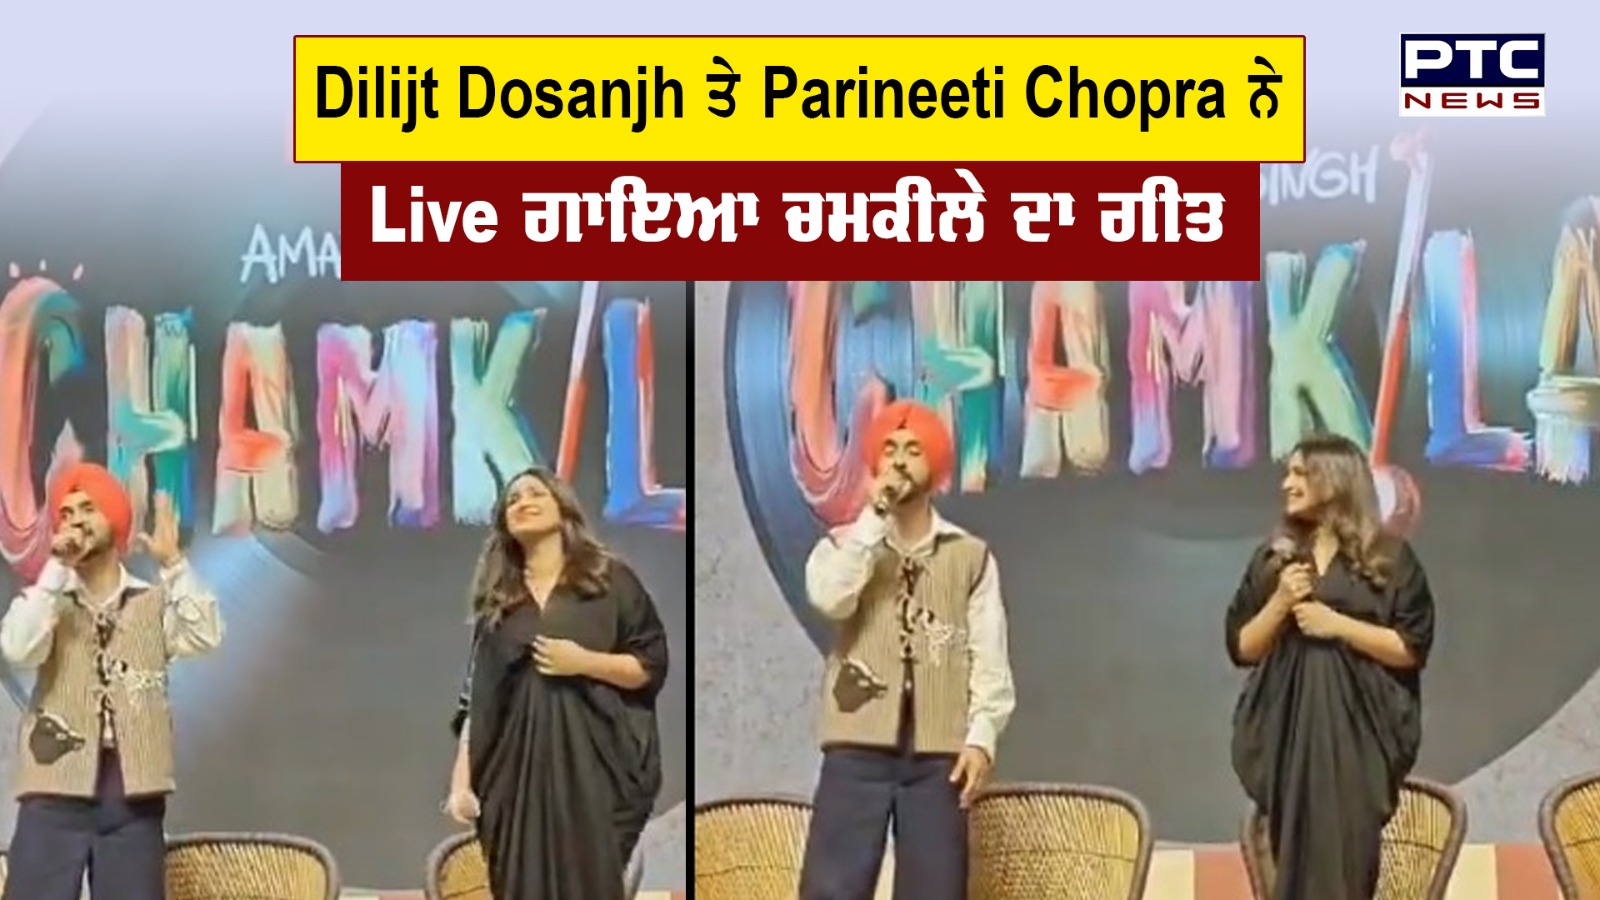 Diljit Dosanjh ਤੇ Parineeti Chopra ਨੇ ਸਟੇਜ 'ਤੇ ਬੰਨ੍ਹੇ ਰੰਗ, Live ਗਾਇਆ ਚਮਕੀਲੇ ਦਾ ਗੀਤ